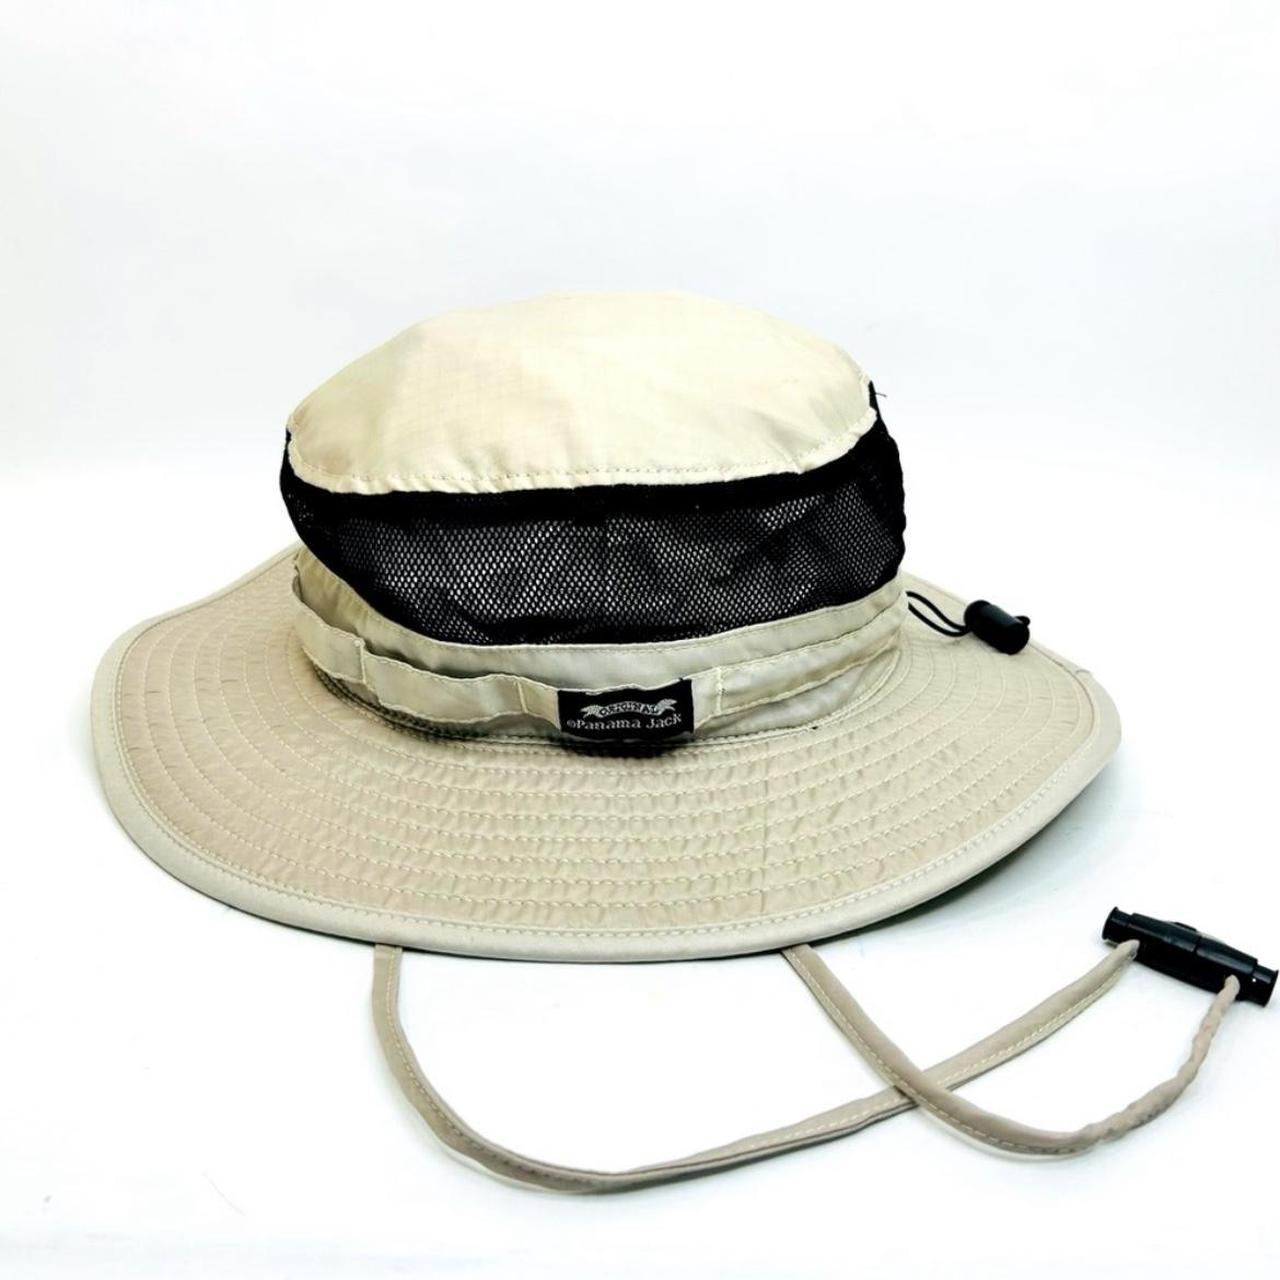 Men's Hats, Men's Sun Hats – Panama Jack®, beach hat mens - simplhrm.com